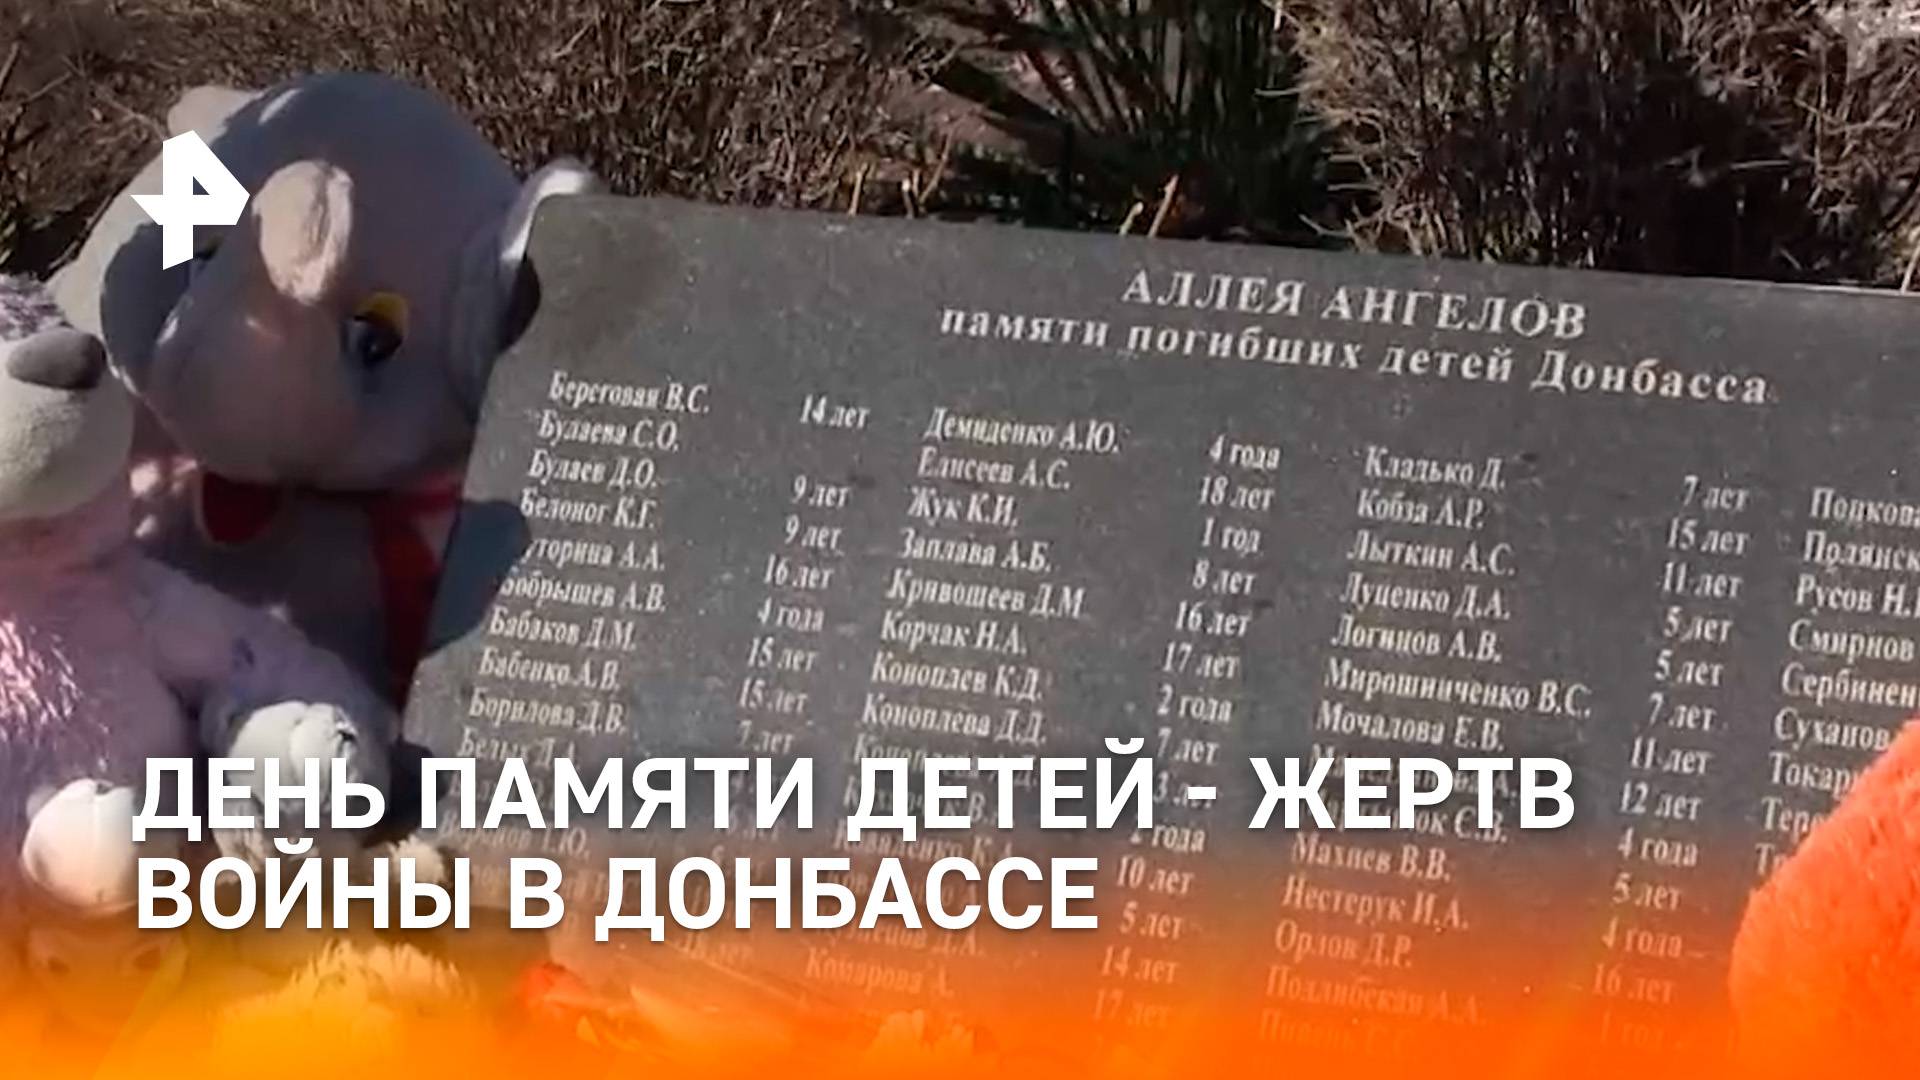 27 июля - День памяти детей-жертв войны в Донбассе / РЕН Новости